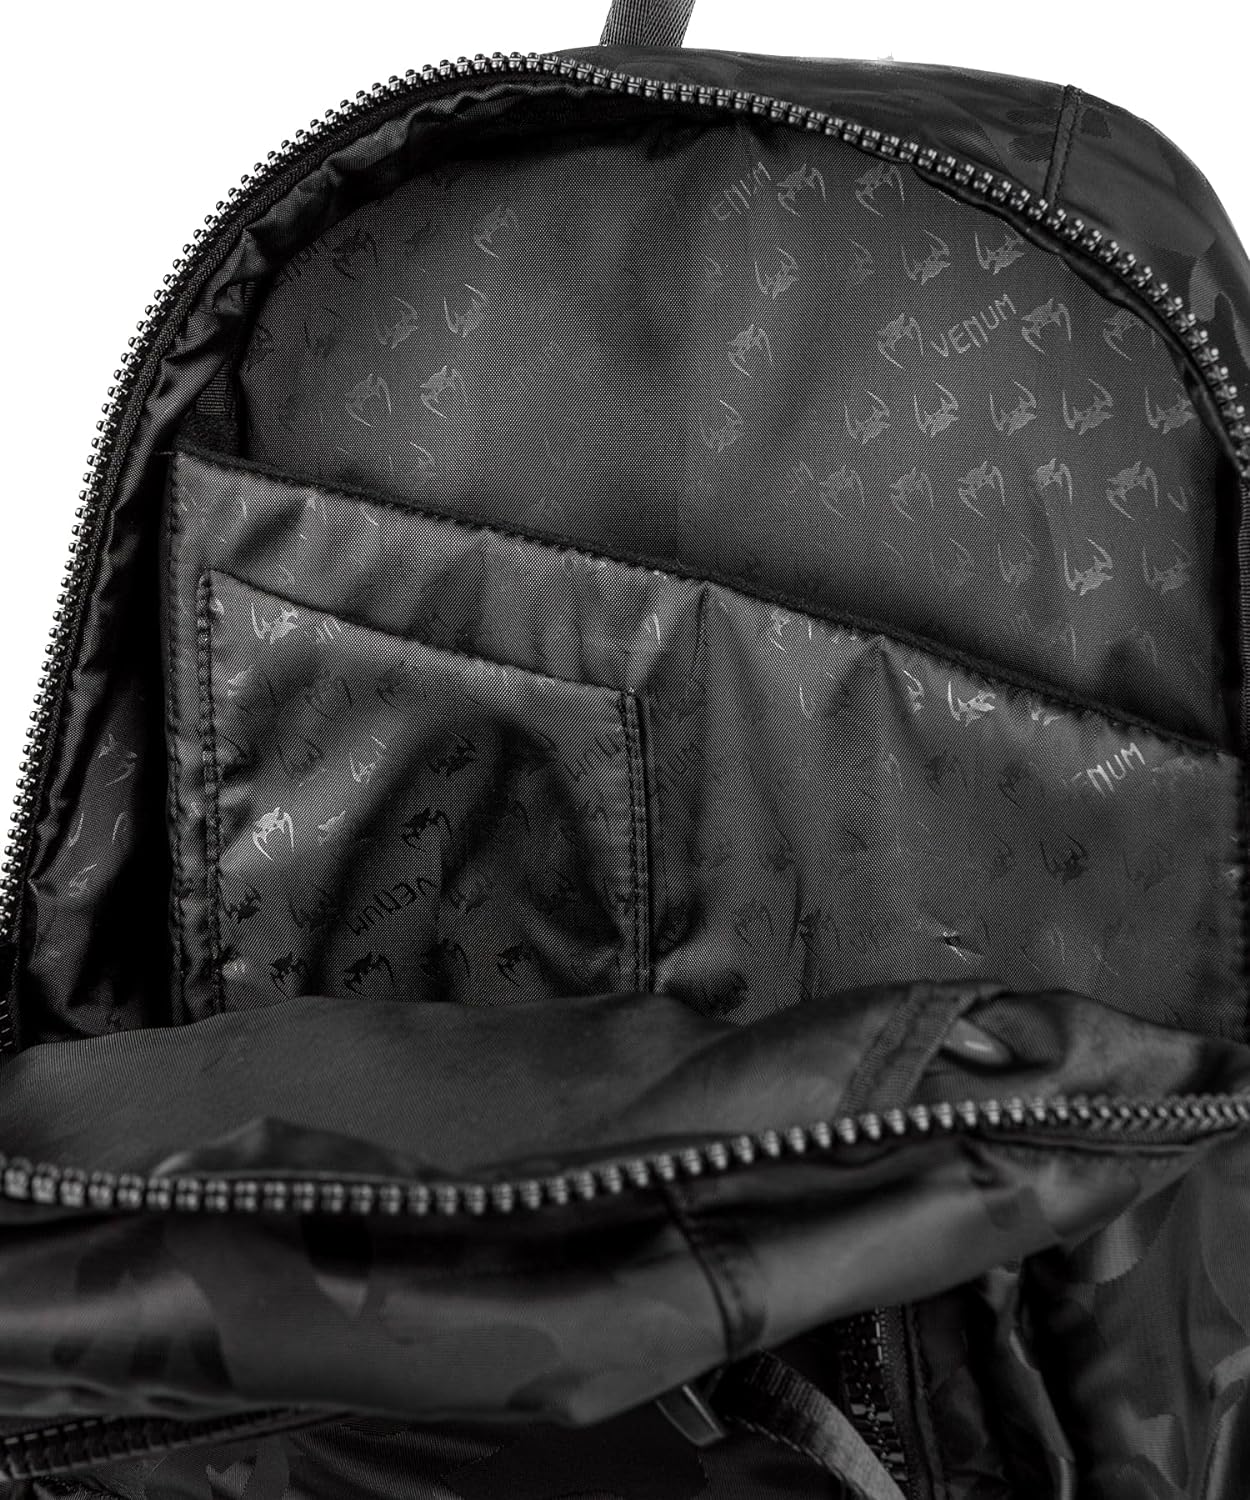  Рюкзак Venum Challenger Pro черный камуфляж 